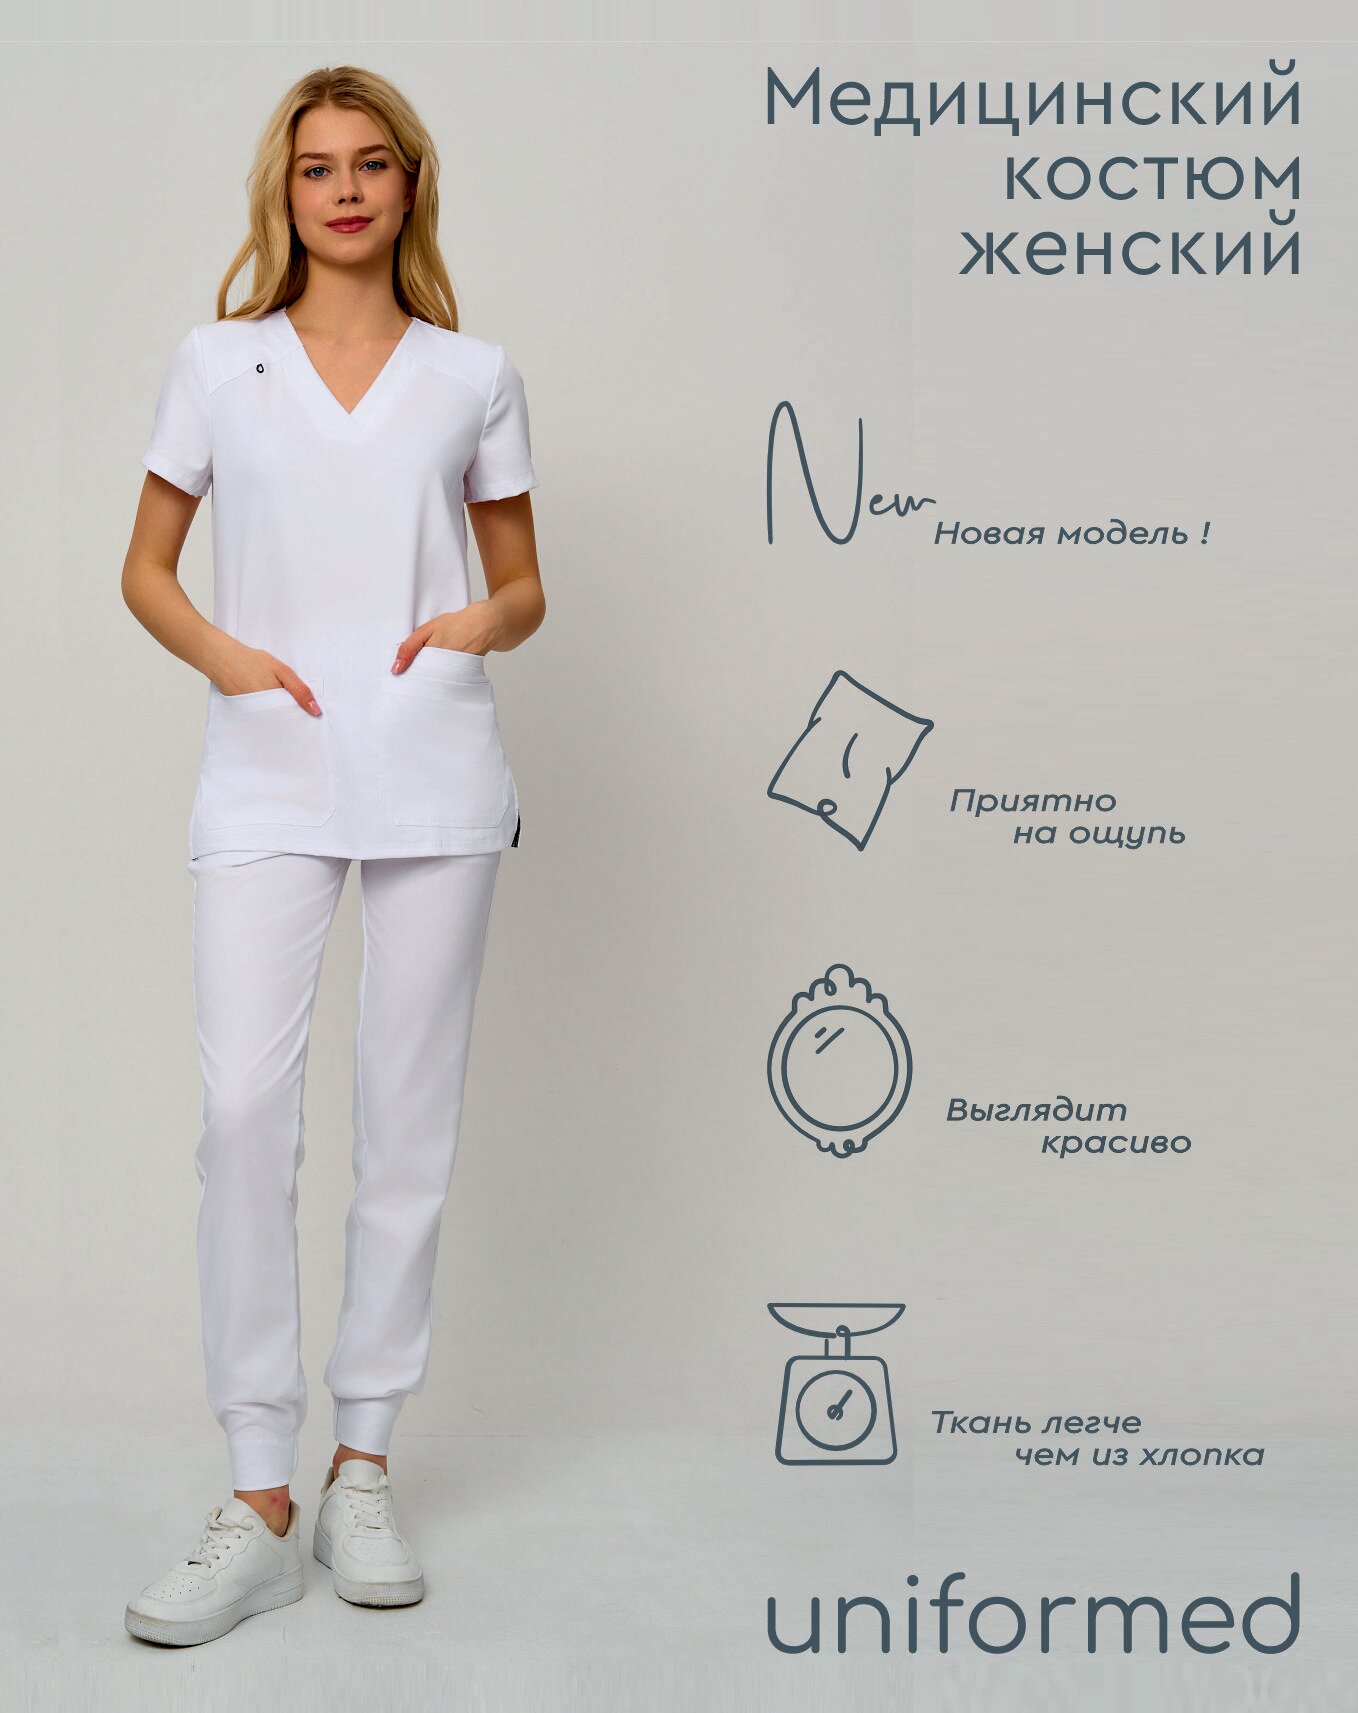 Медицинский женский костюм 419.5.1 Uniformed, ткань вискоза стрейч, рукав короткий, цвет белый, отделка черная, размер 54